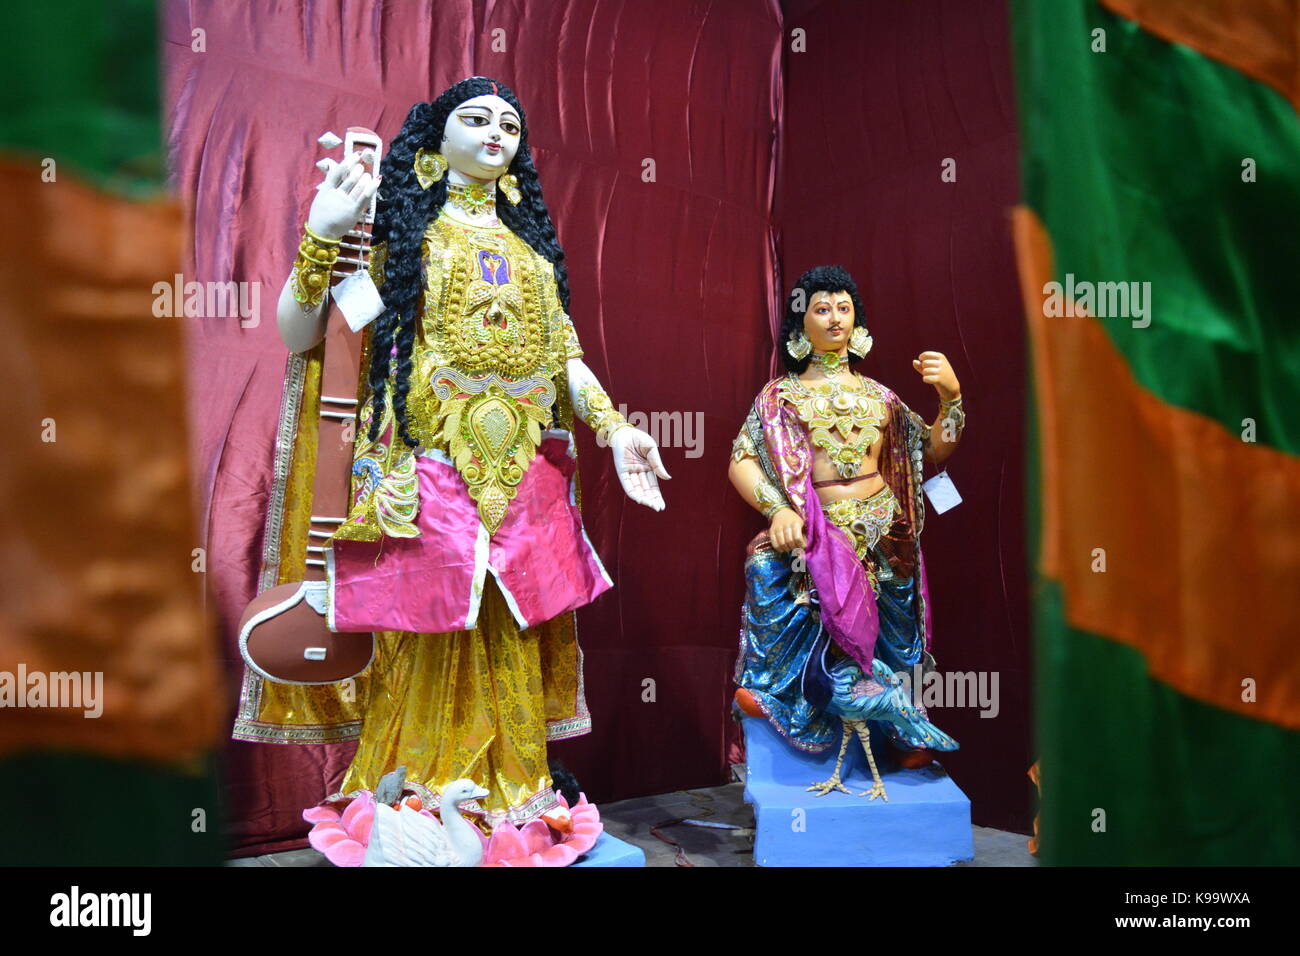 Kalkutta, Indien. 22. September 2017. Incredible India. Eine Puja pandal, geschmückt mit Göttinnen Durga Idol vor dem Hindu festival Durgapuja. durgapuja Eine internationale Karneval und feiern am 26. September 2017 beginnen wird. Credit: rupa Ghosh/alamy Leben Nachrichten. Stockfoto